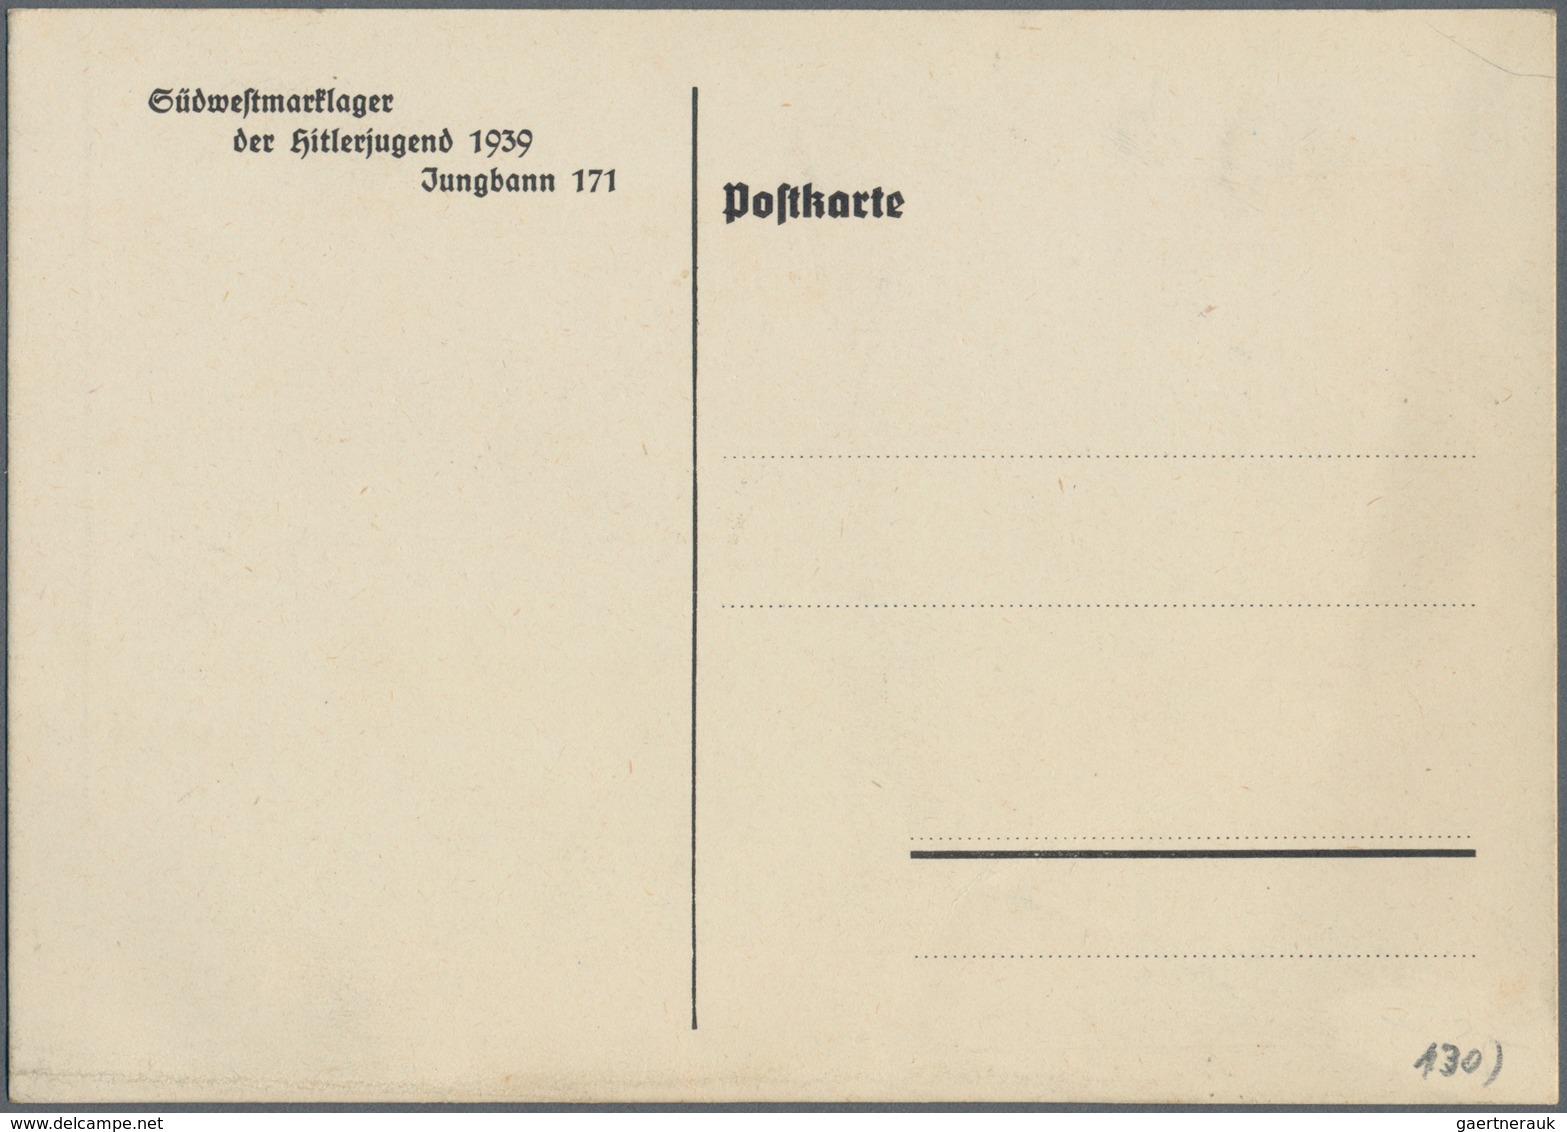 Ansichtskarten: Propaganda: 1939, "Jungbannlager 1939 Jungbann 171 Mannheim", Großformatige Propagan - Politieke Partijen & Verkiezingen